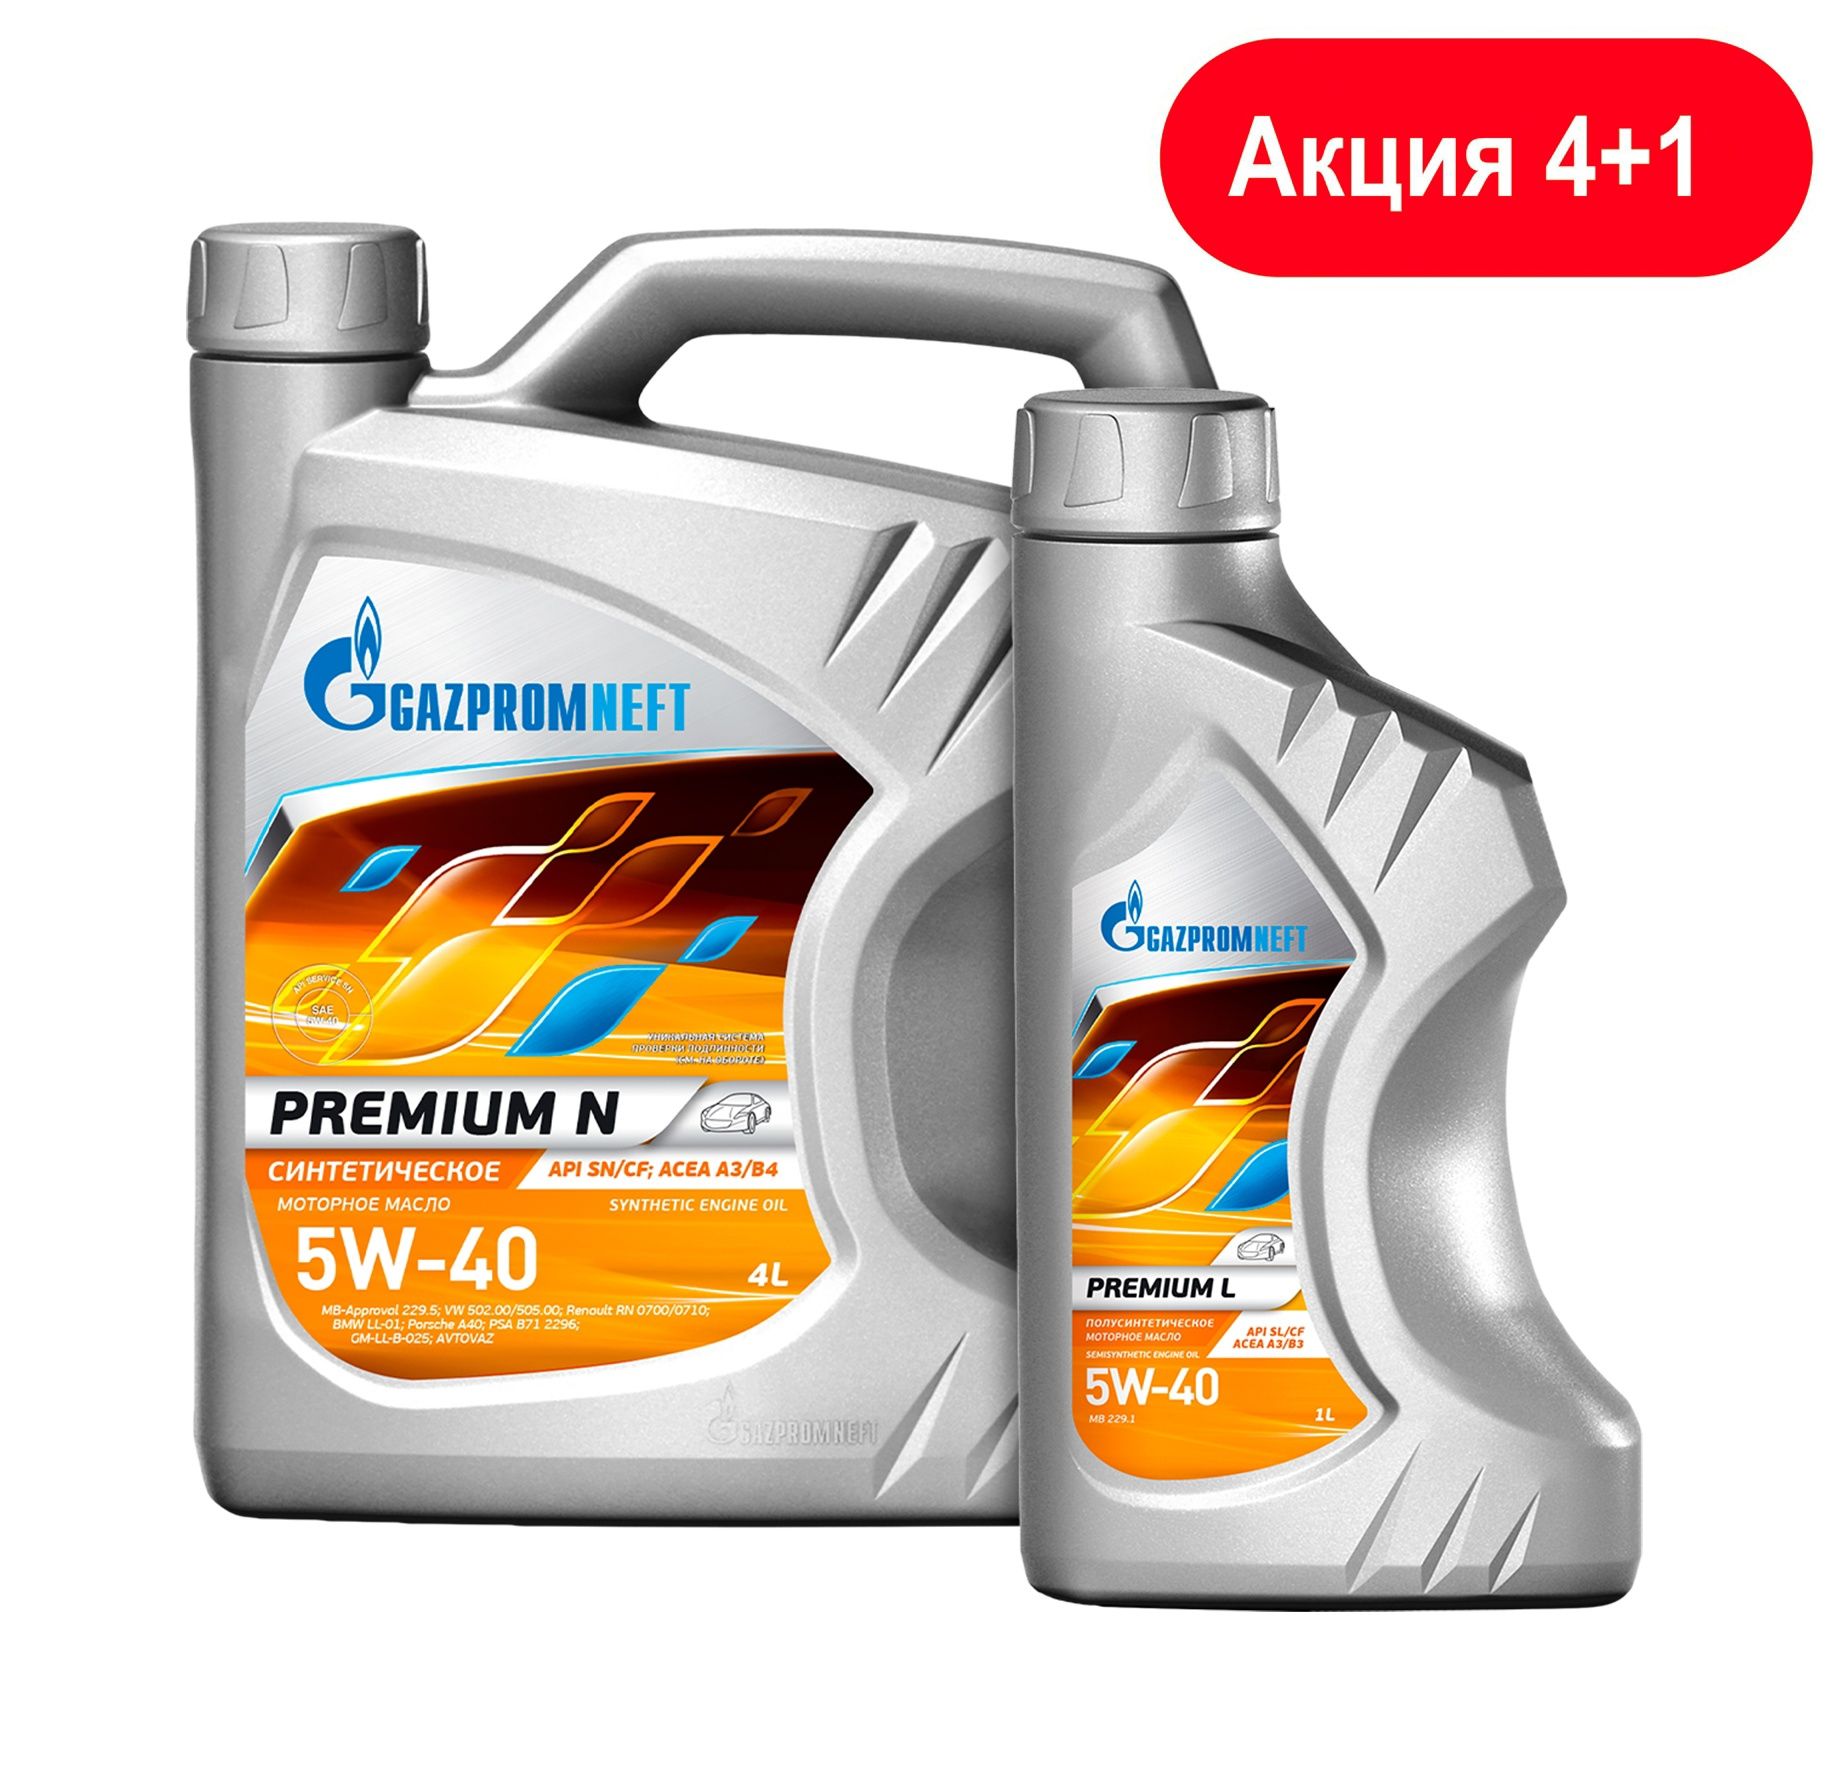 Масло синтетик премиум моторное 5w40. Gazpromneft Premium n 5w-40. Масло Газпромнефть 5w40 премиум. Масло Газпромнефть премиум н 5w40. Масло Газпромнефть 5w40 Premium n.